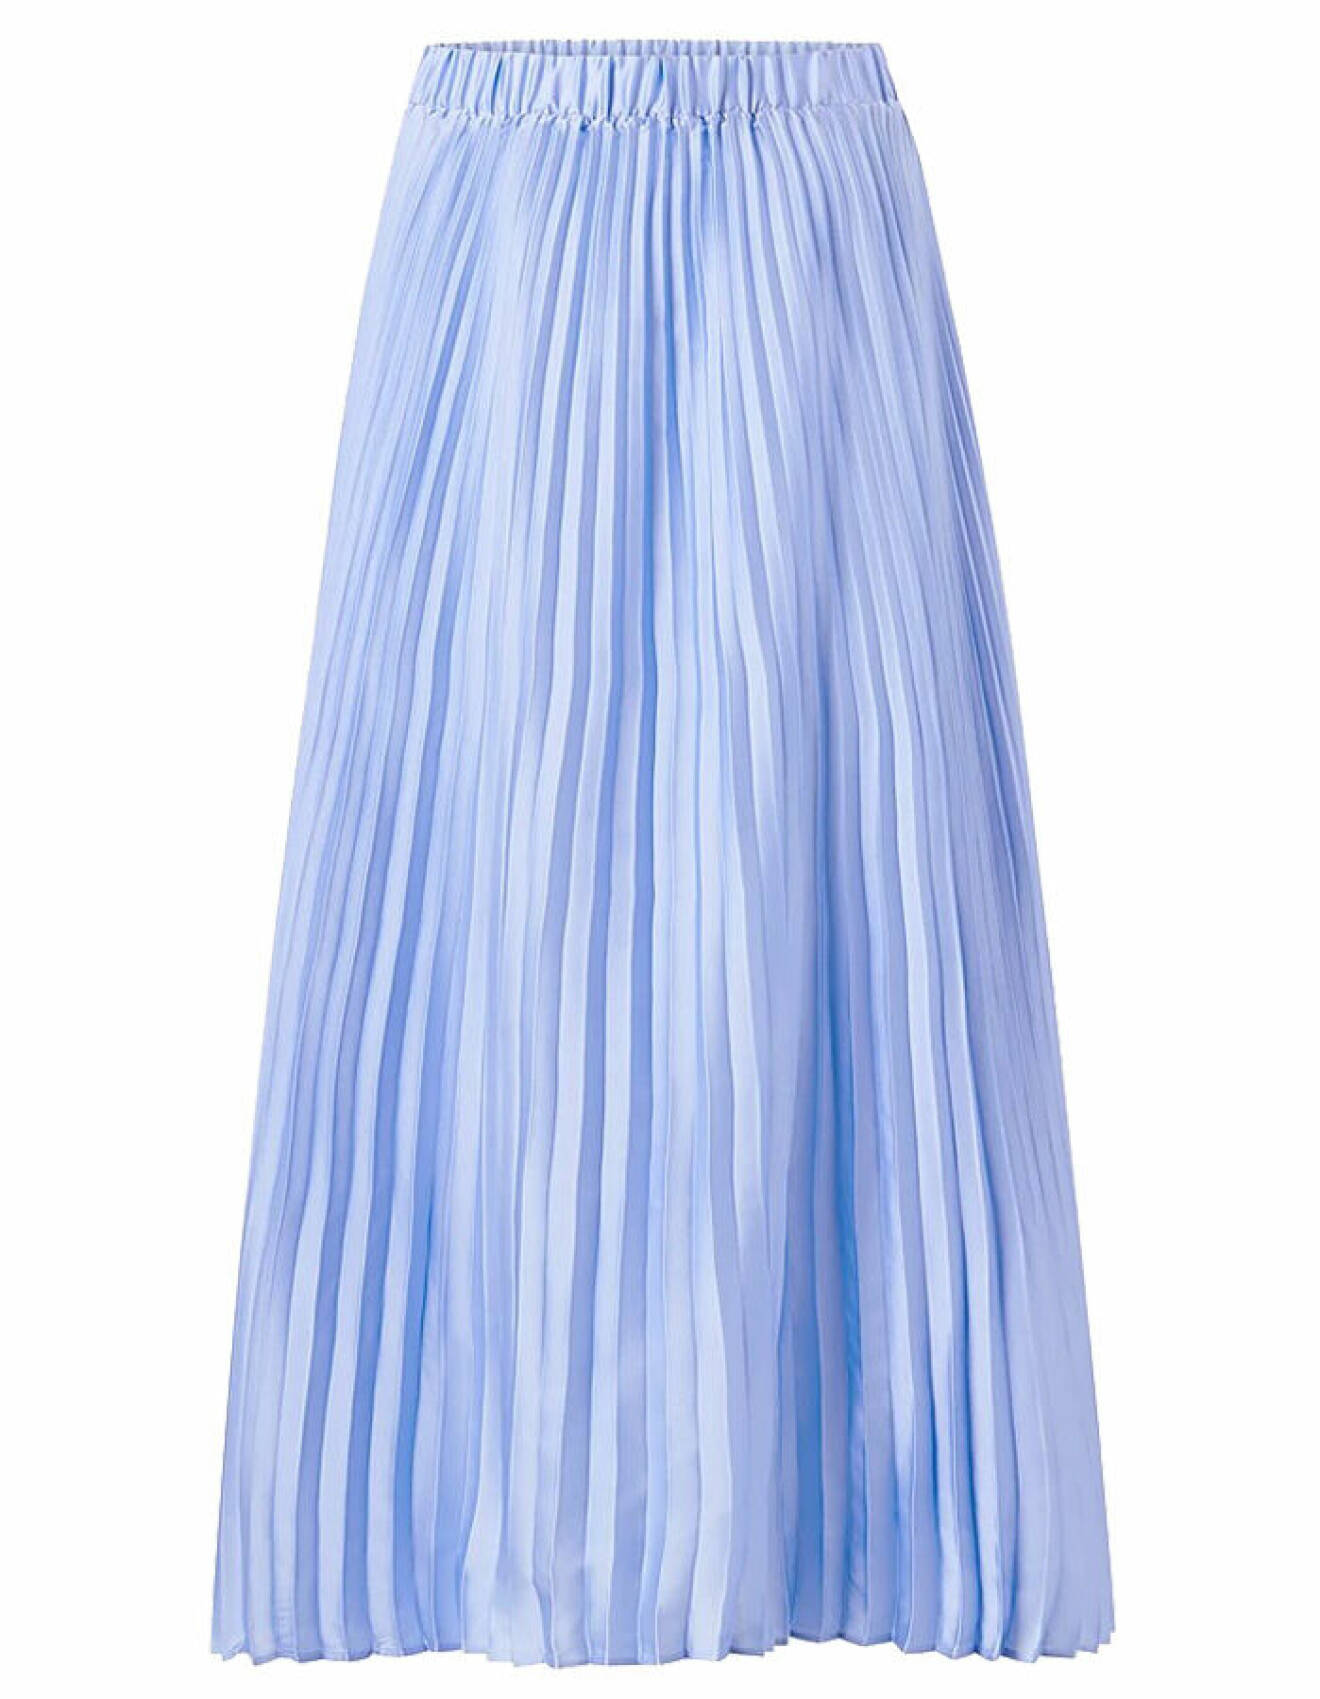 ljusblå plisserad kjol från ellos collection